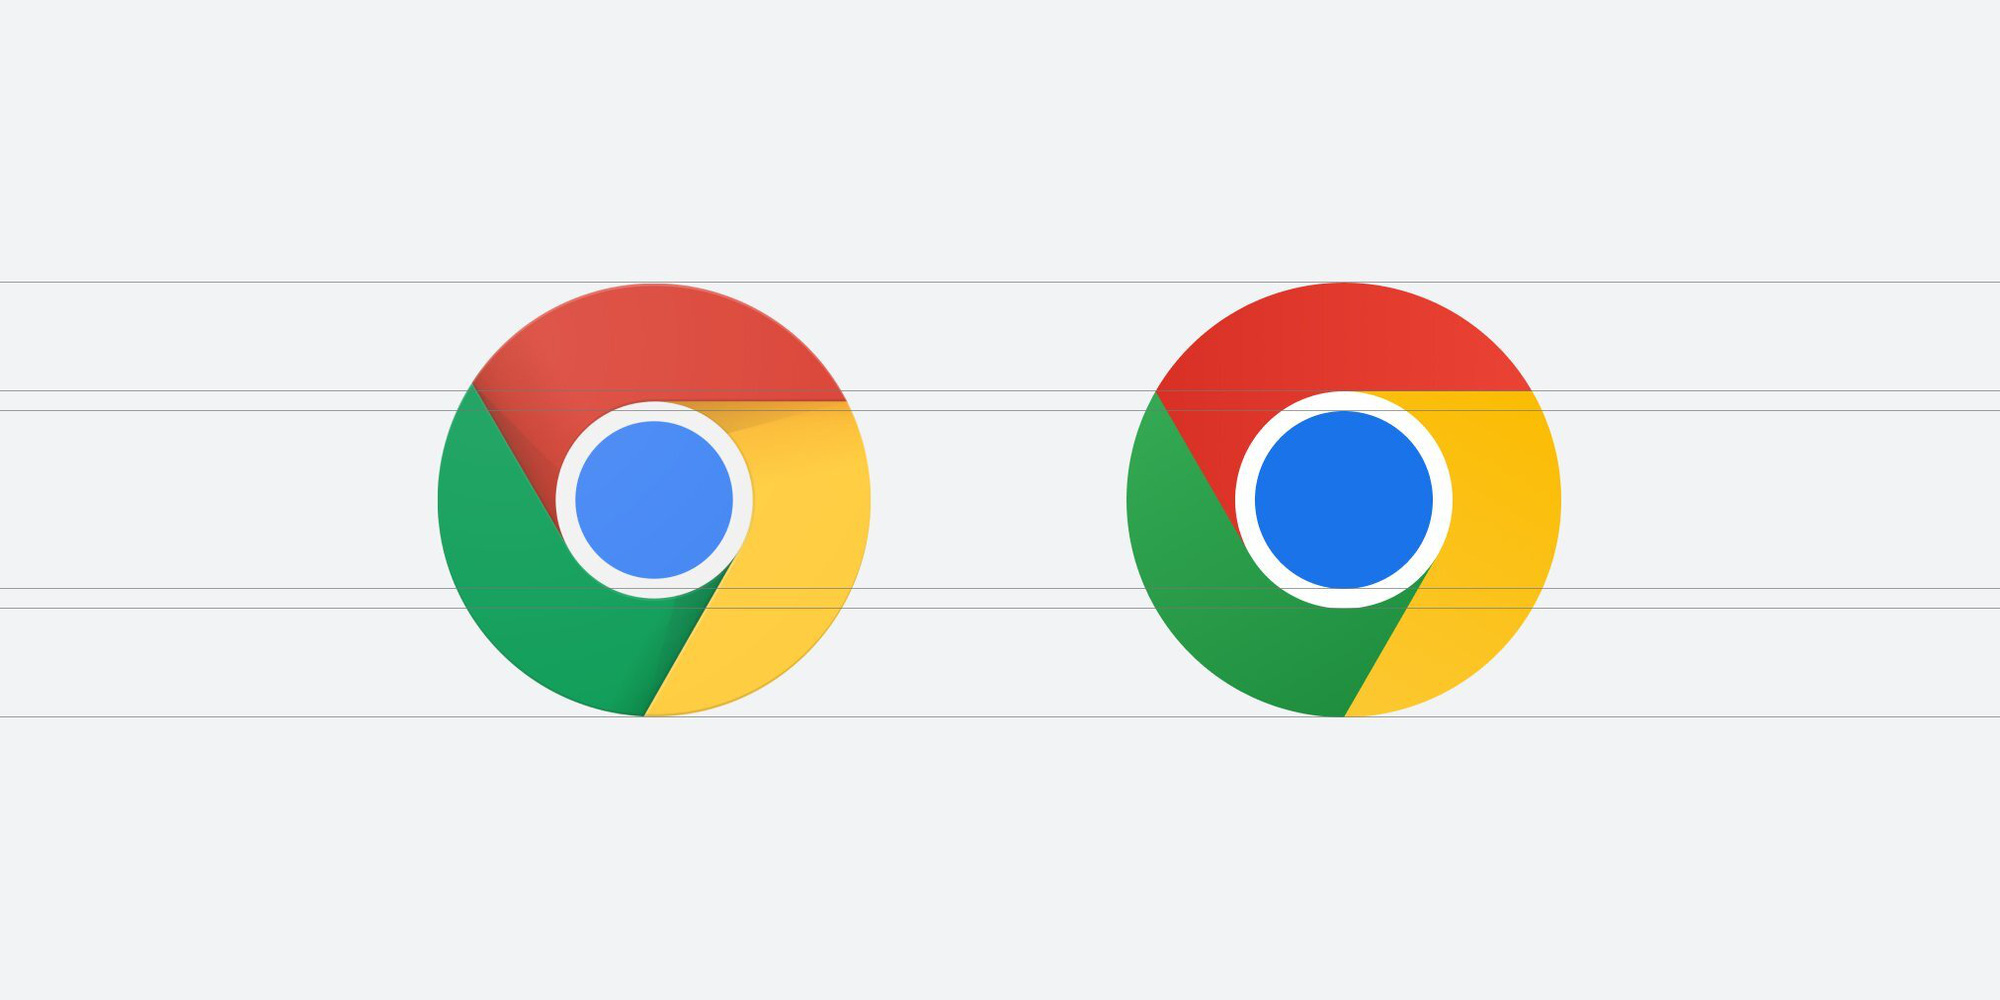 Logo mới Google Chrome 2024 đã xuất hiện và rực rỡ hơn bao giờ hết! Sự thay đổi về hình dáng và màu sắc sẽ khiến cho trình duyệt của bạn trở nên mới mẻ và hấp dẫn hơn. Hãy cập nhật ngay để không bỏ lỡ những trải nghiệm đầy thú vị với Google Chrome 2024!